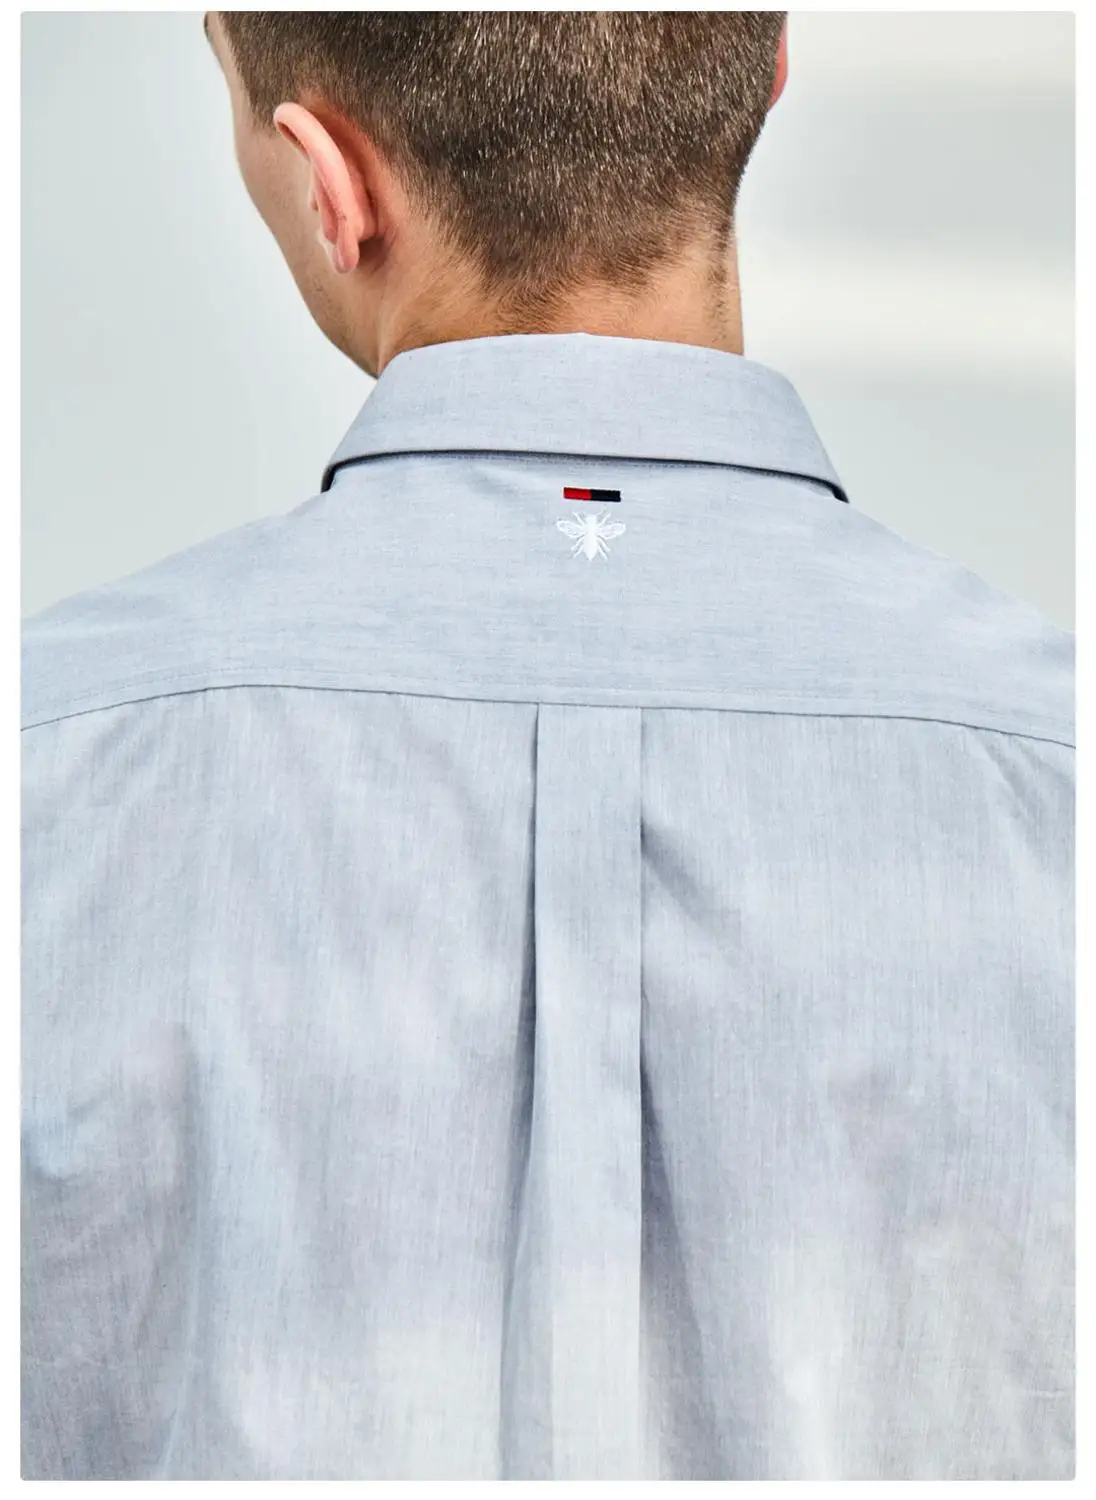 Xiaomi Instant me, мужская рубашка с рукавом «Семь четверти», хлопковая, удобная, летняя, ткань Оксфорд, элегантная, модная, облегающая одежда